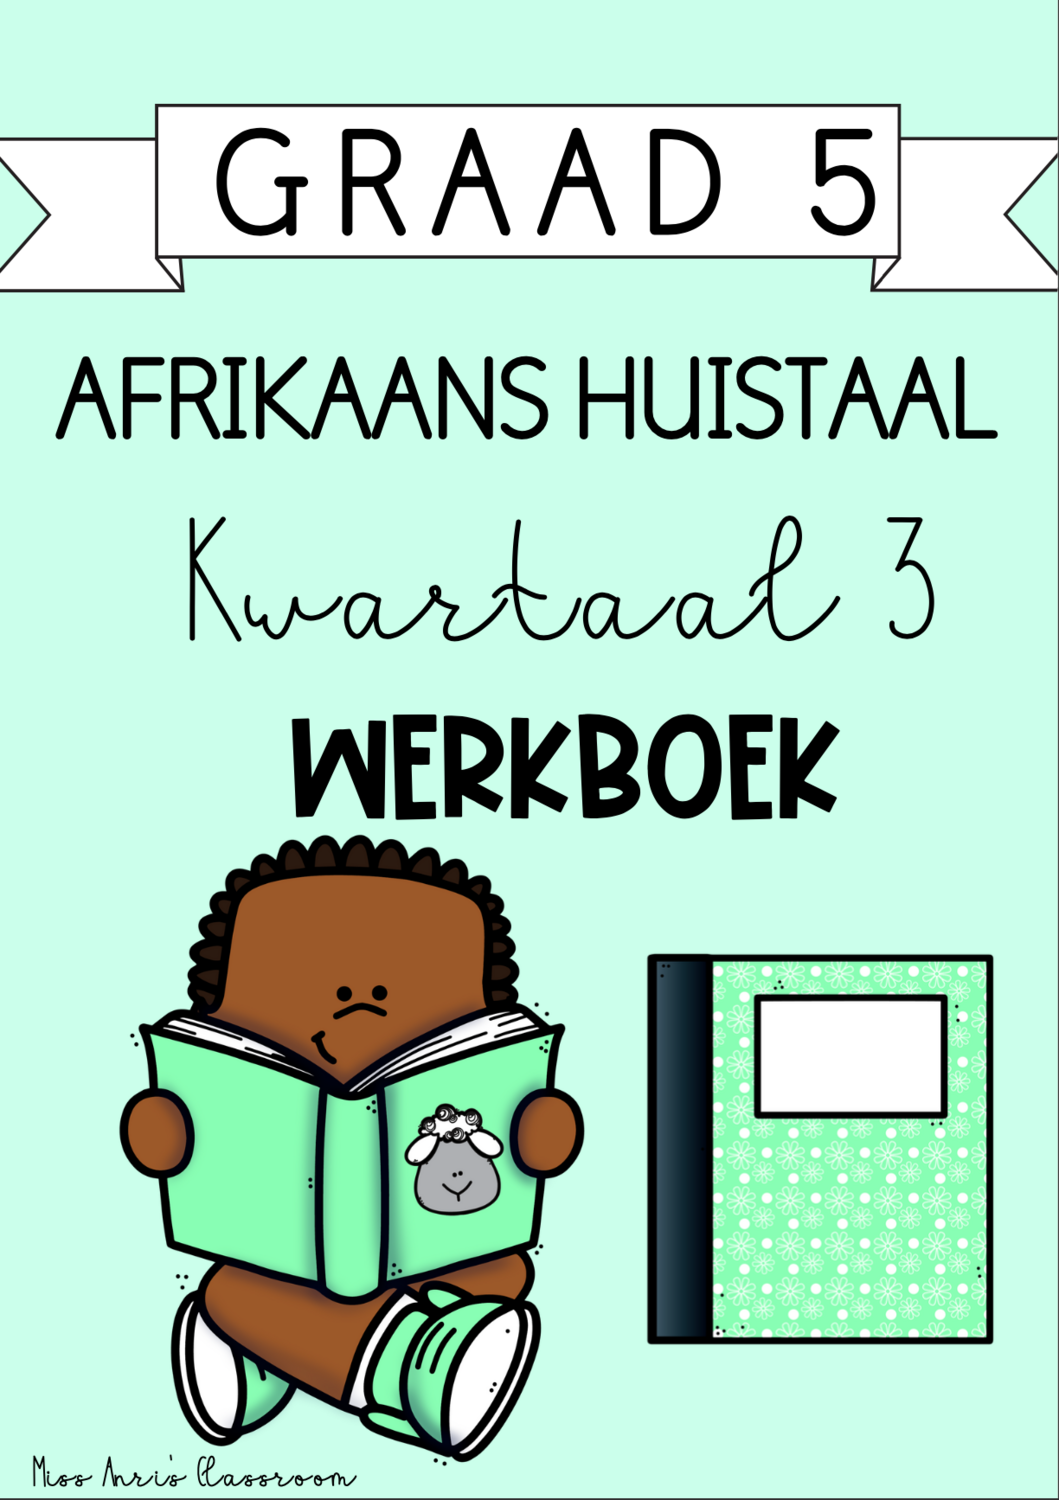 Graad 5 Afrikaans Huistaal kwartaal 3 werkboek (2023/2024)